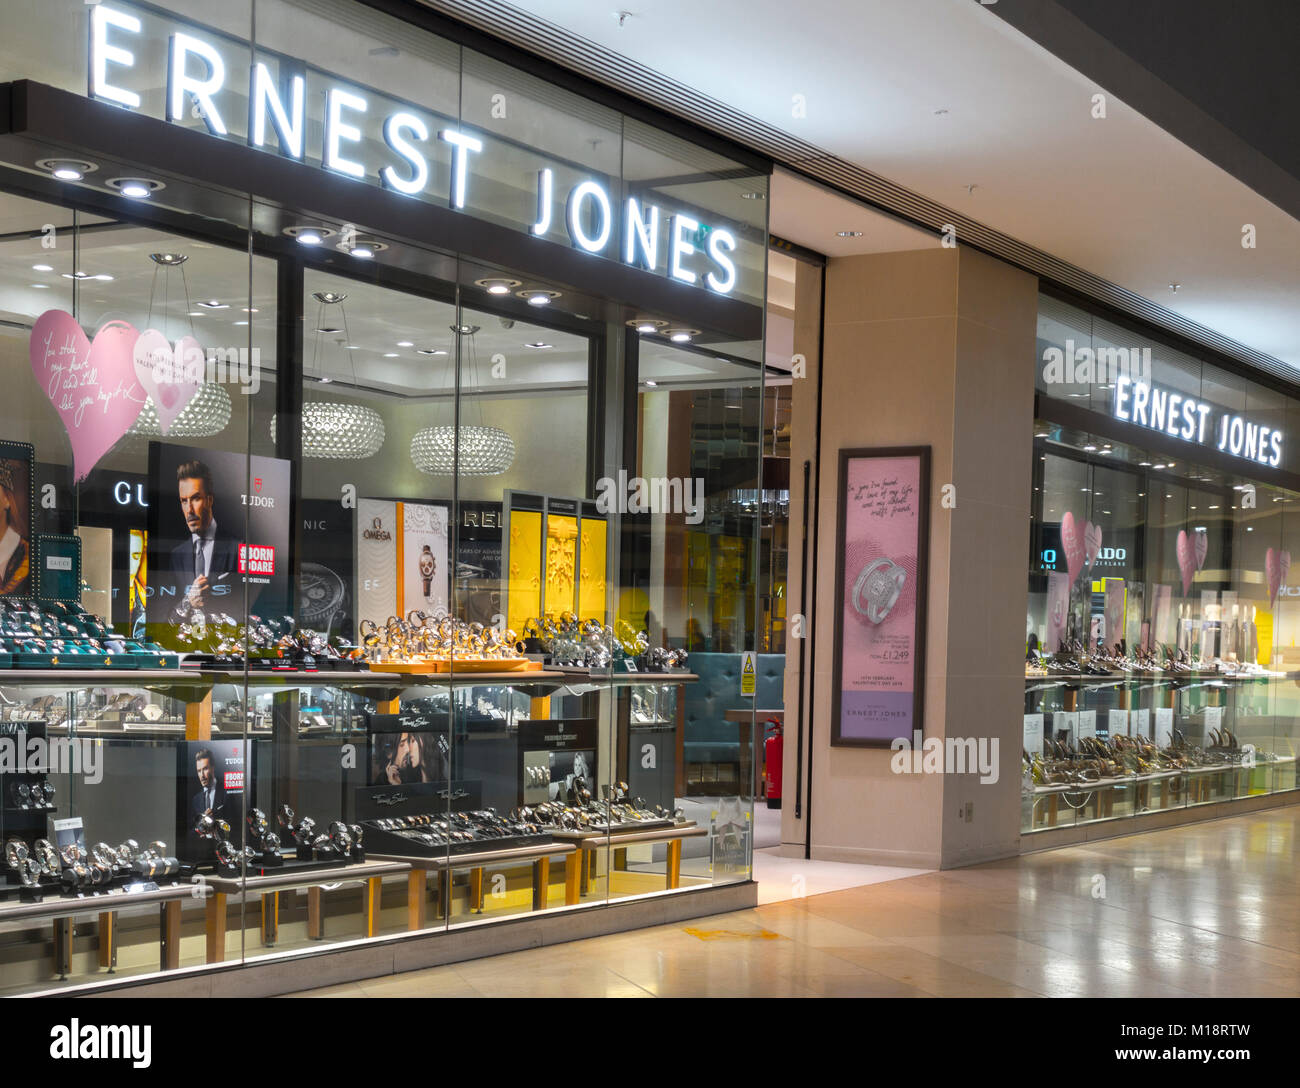 Ernest Jones Juweliere laden/speichern, mit niemand herum, in der queensgate Shopping Center in der Stadt Peterborough, Cambridgeshire, England, UK. Stockfoto